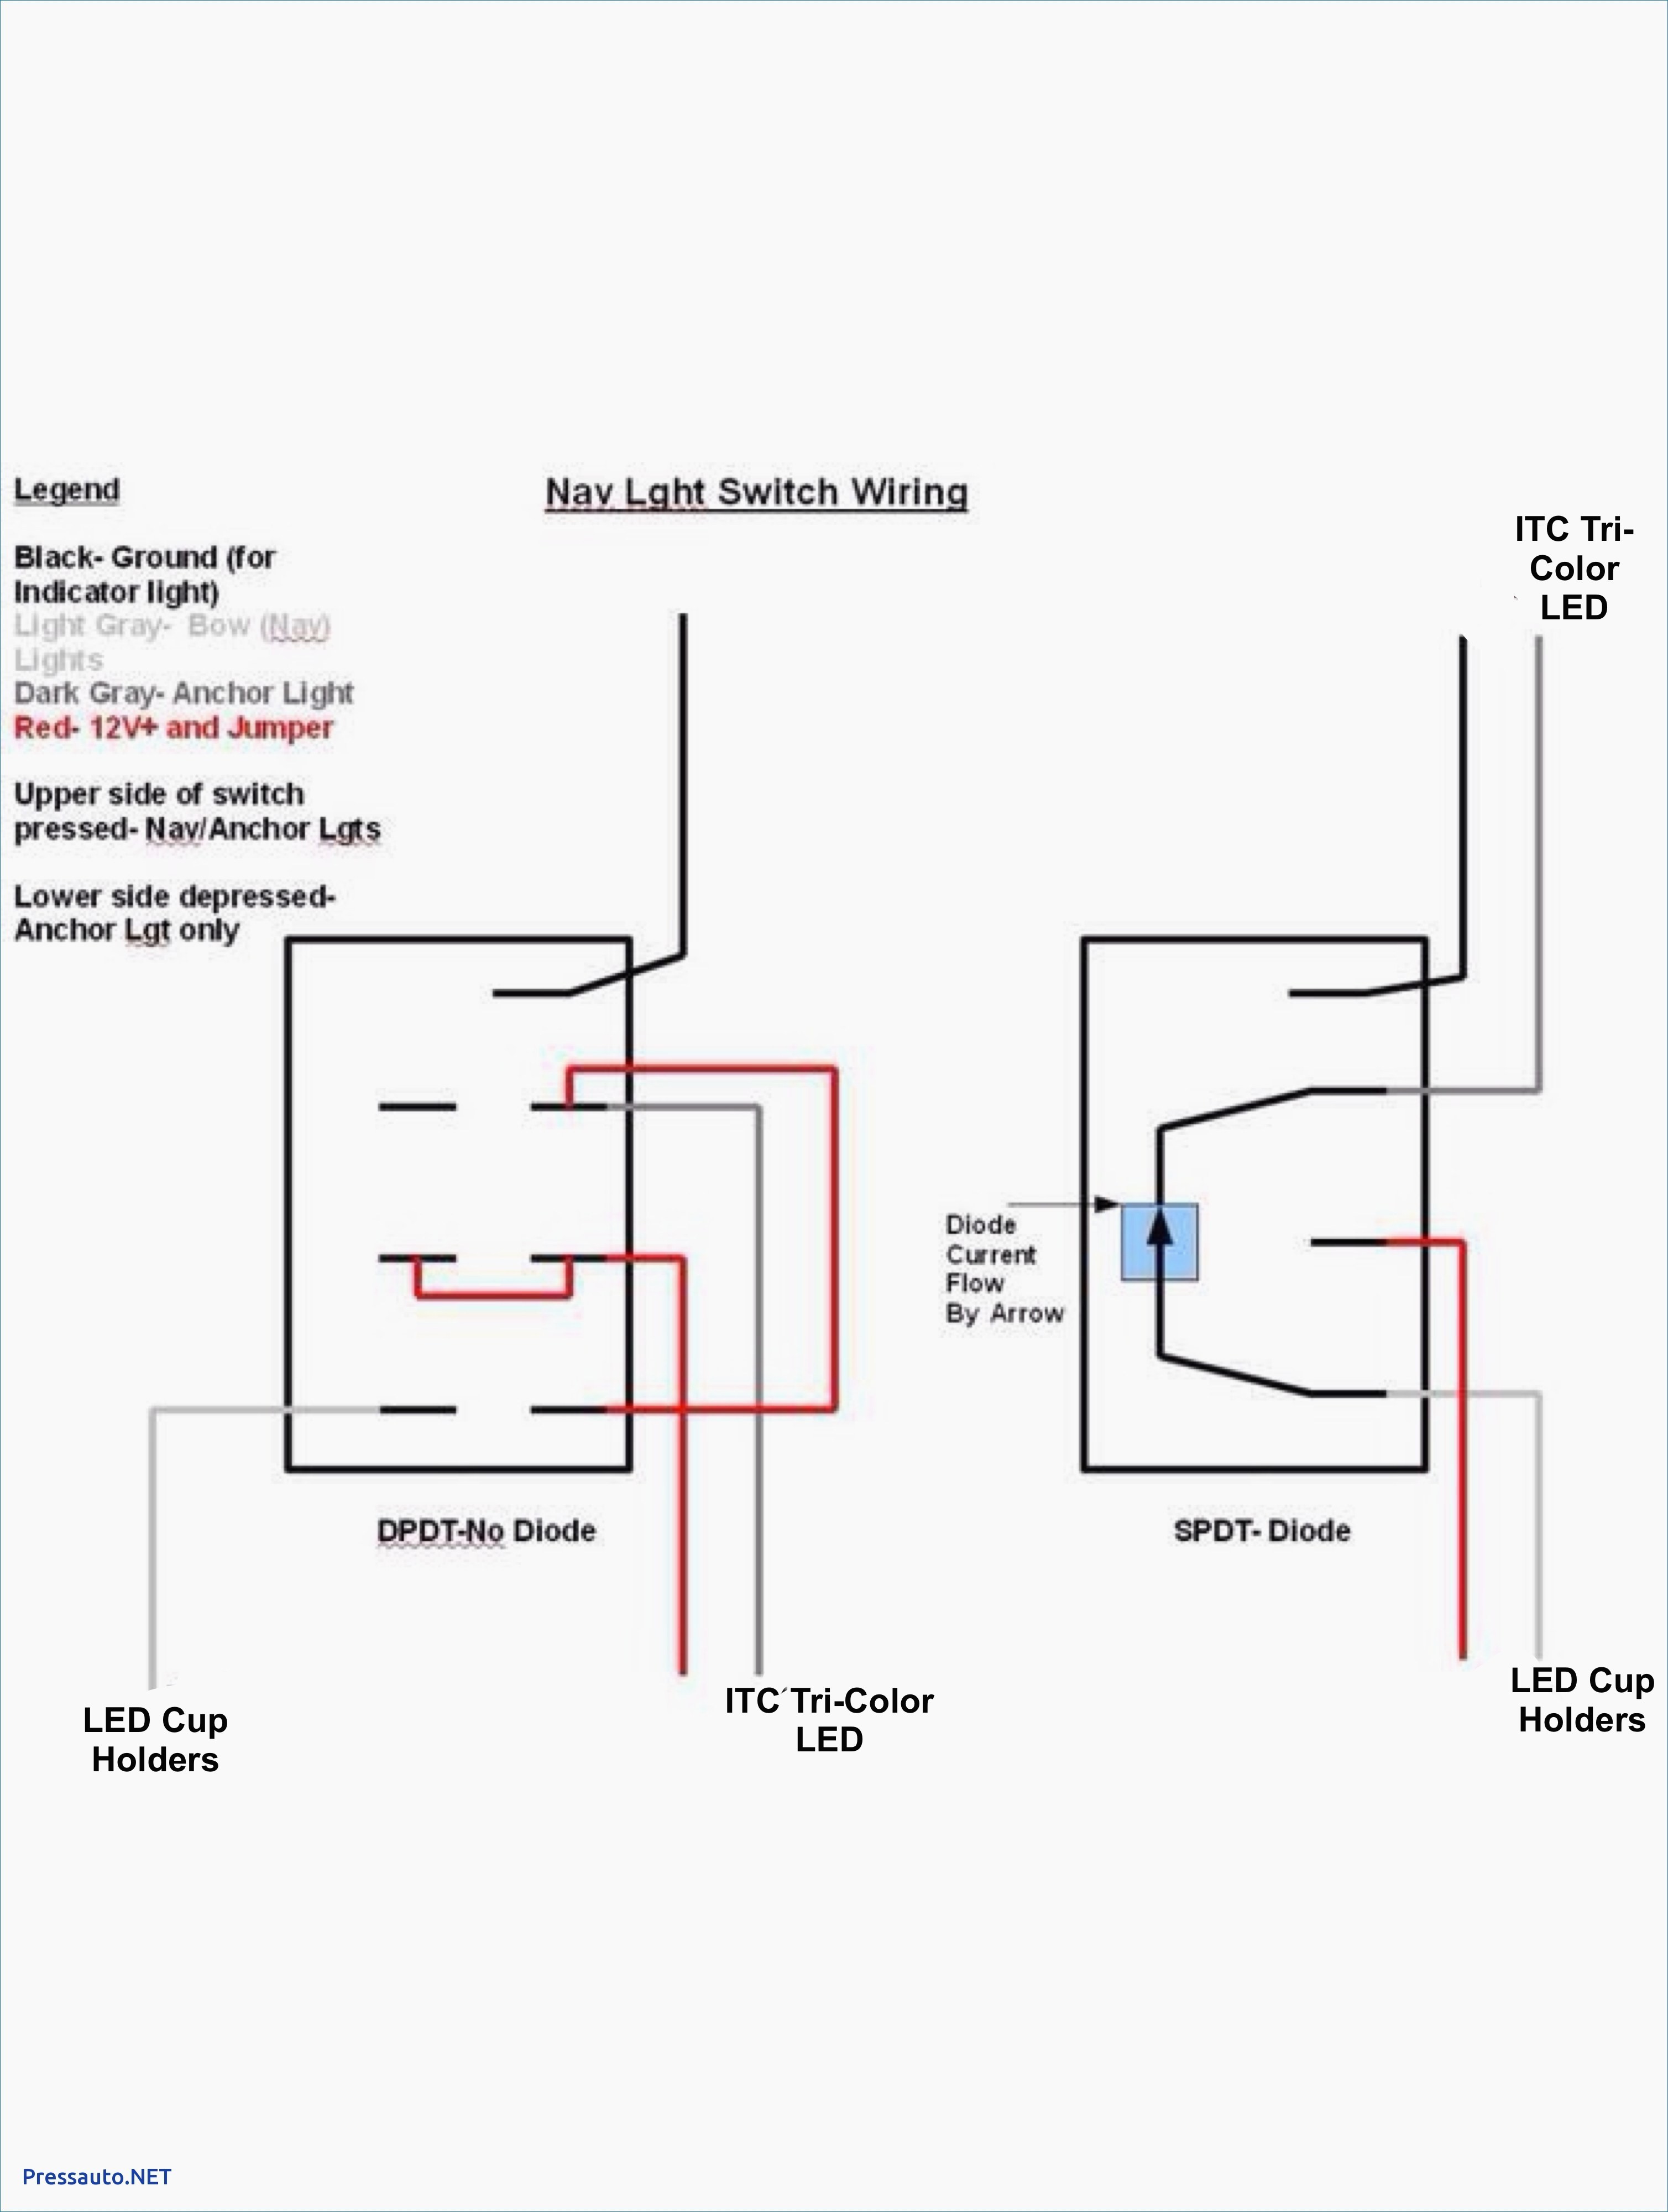 12 Volt Switch Wiring Diagram Komatsu solenoid Wiring Diagram Wiring Diagram toolbox Of 12 Volt Switch Wiring Diagram